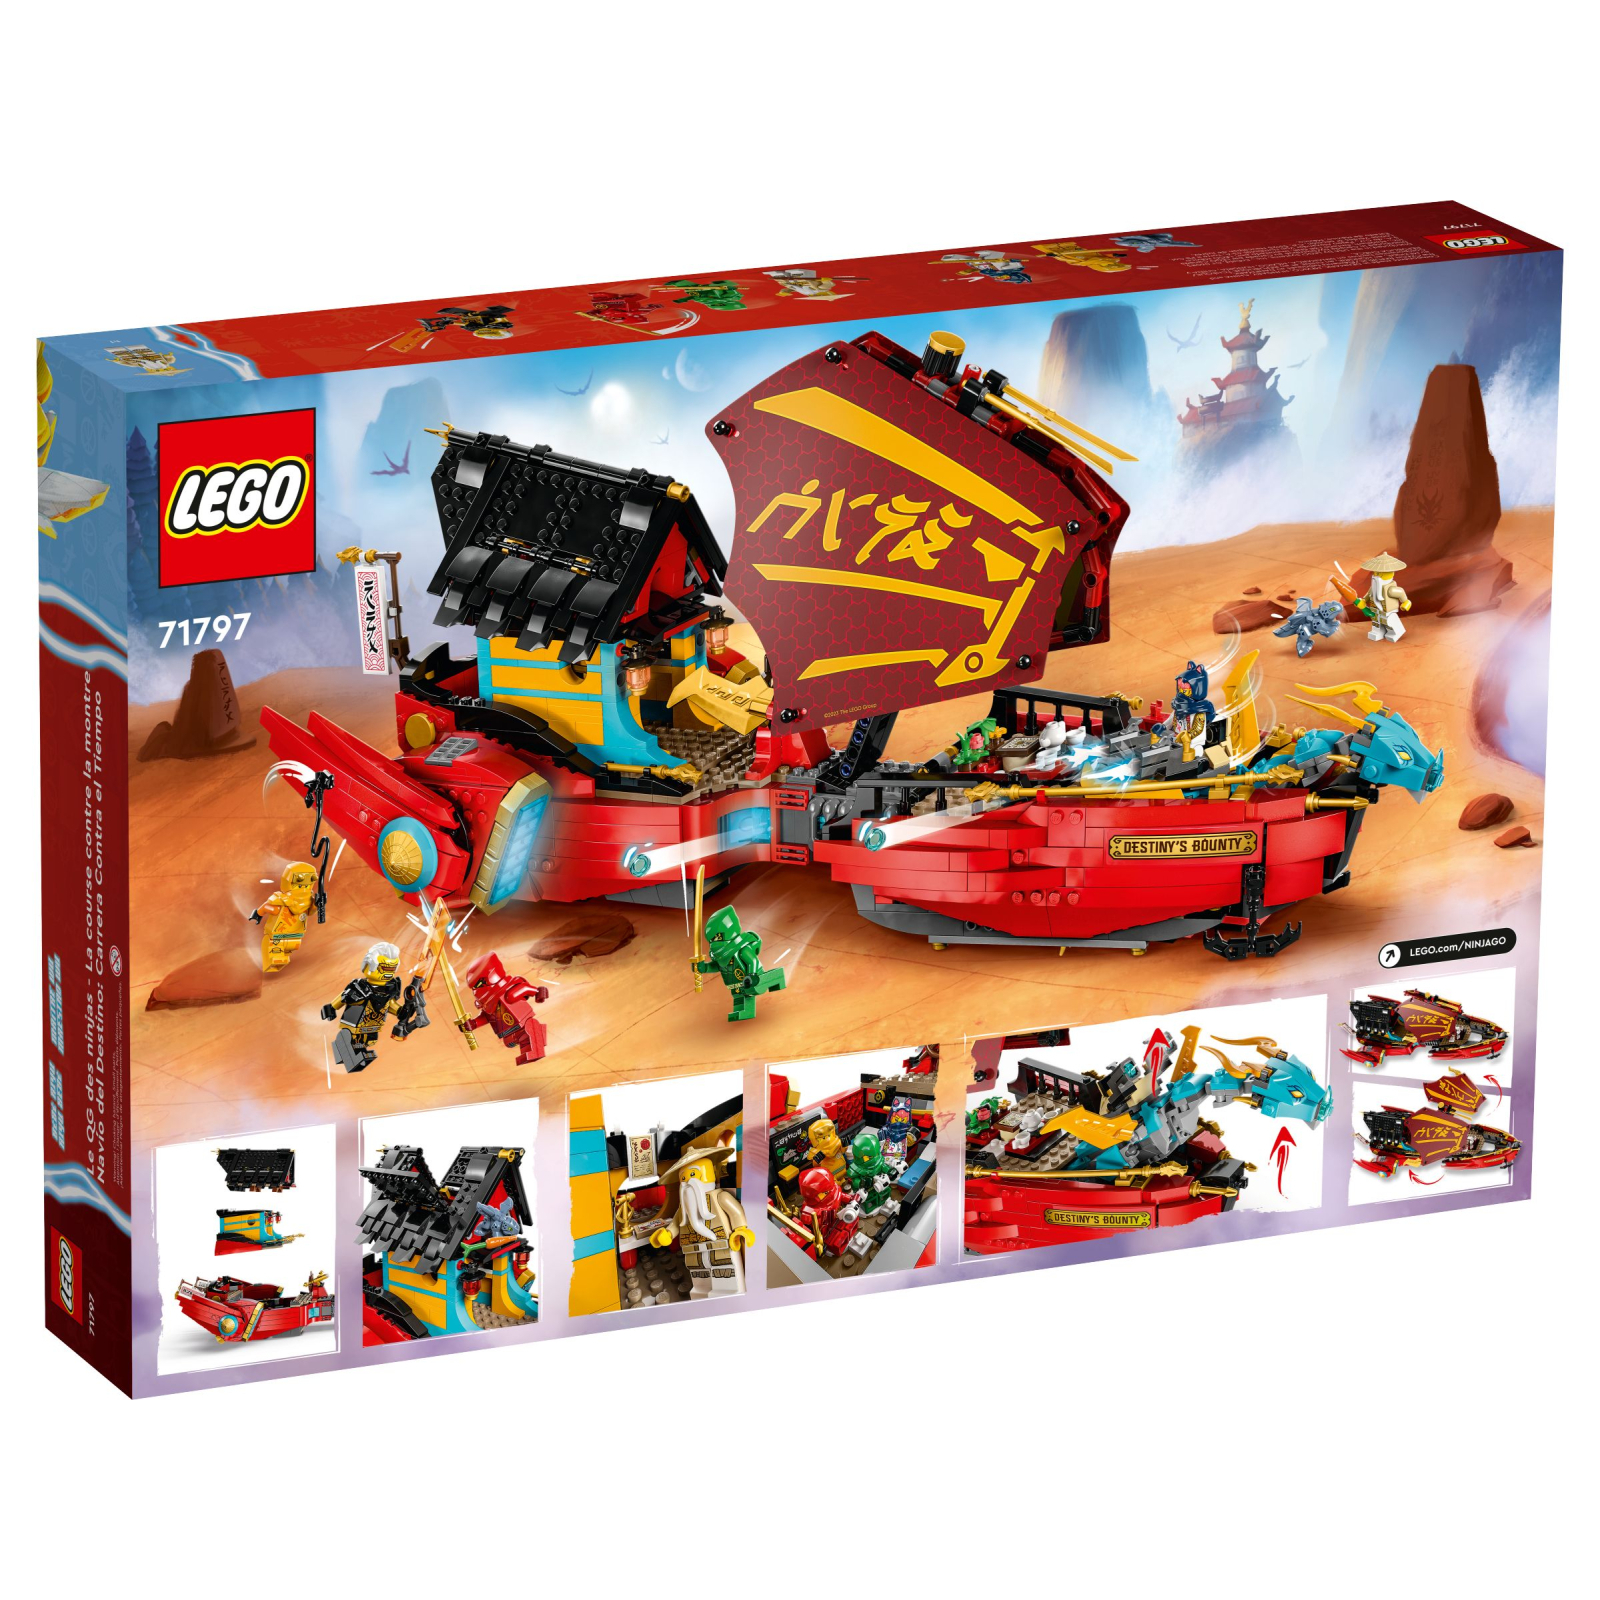 Конструктор LEGO Ninjago Подарок судьбы — гонки со временем 1739 деталей (71797) изображение 11